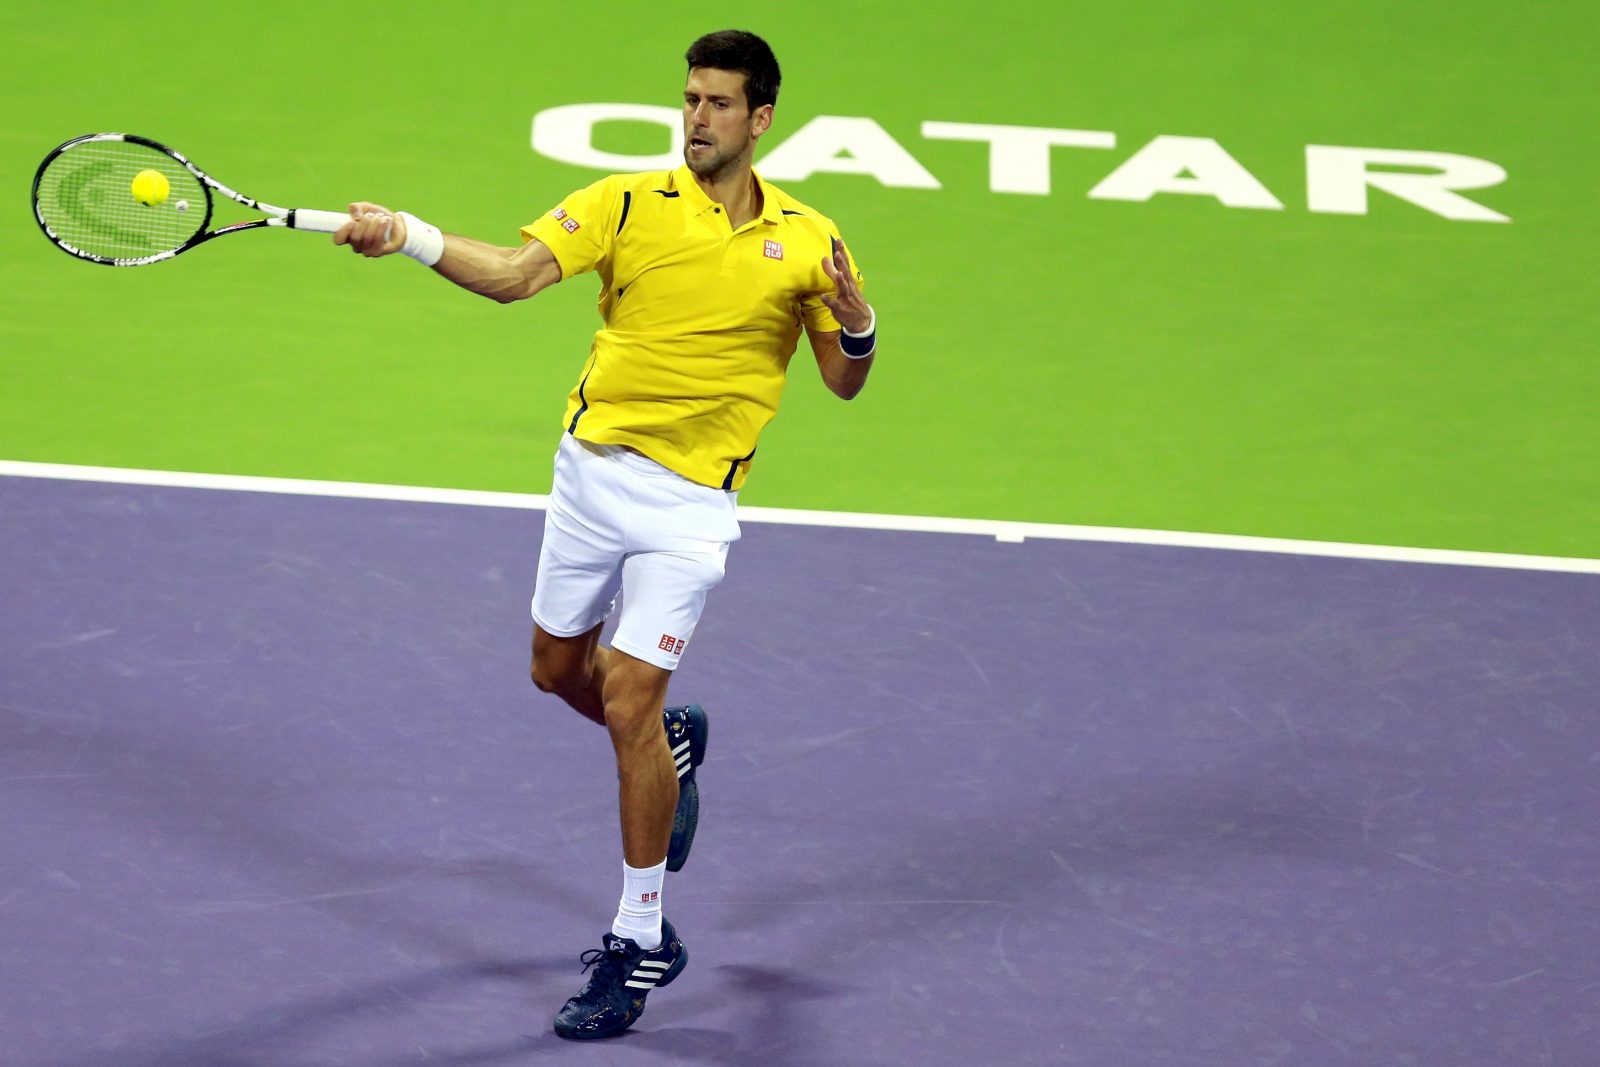 Australian Open: Đoković pobijedio Nishikorija i u polufinalu igra protiv Federera, Life.ba